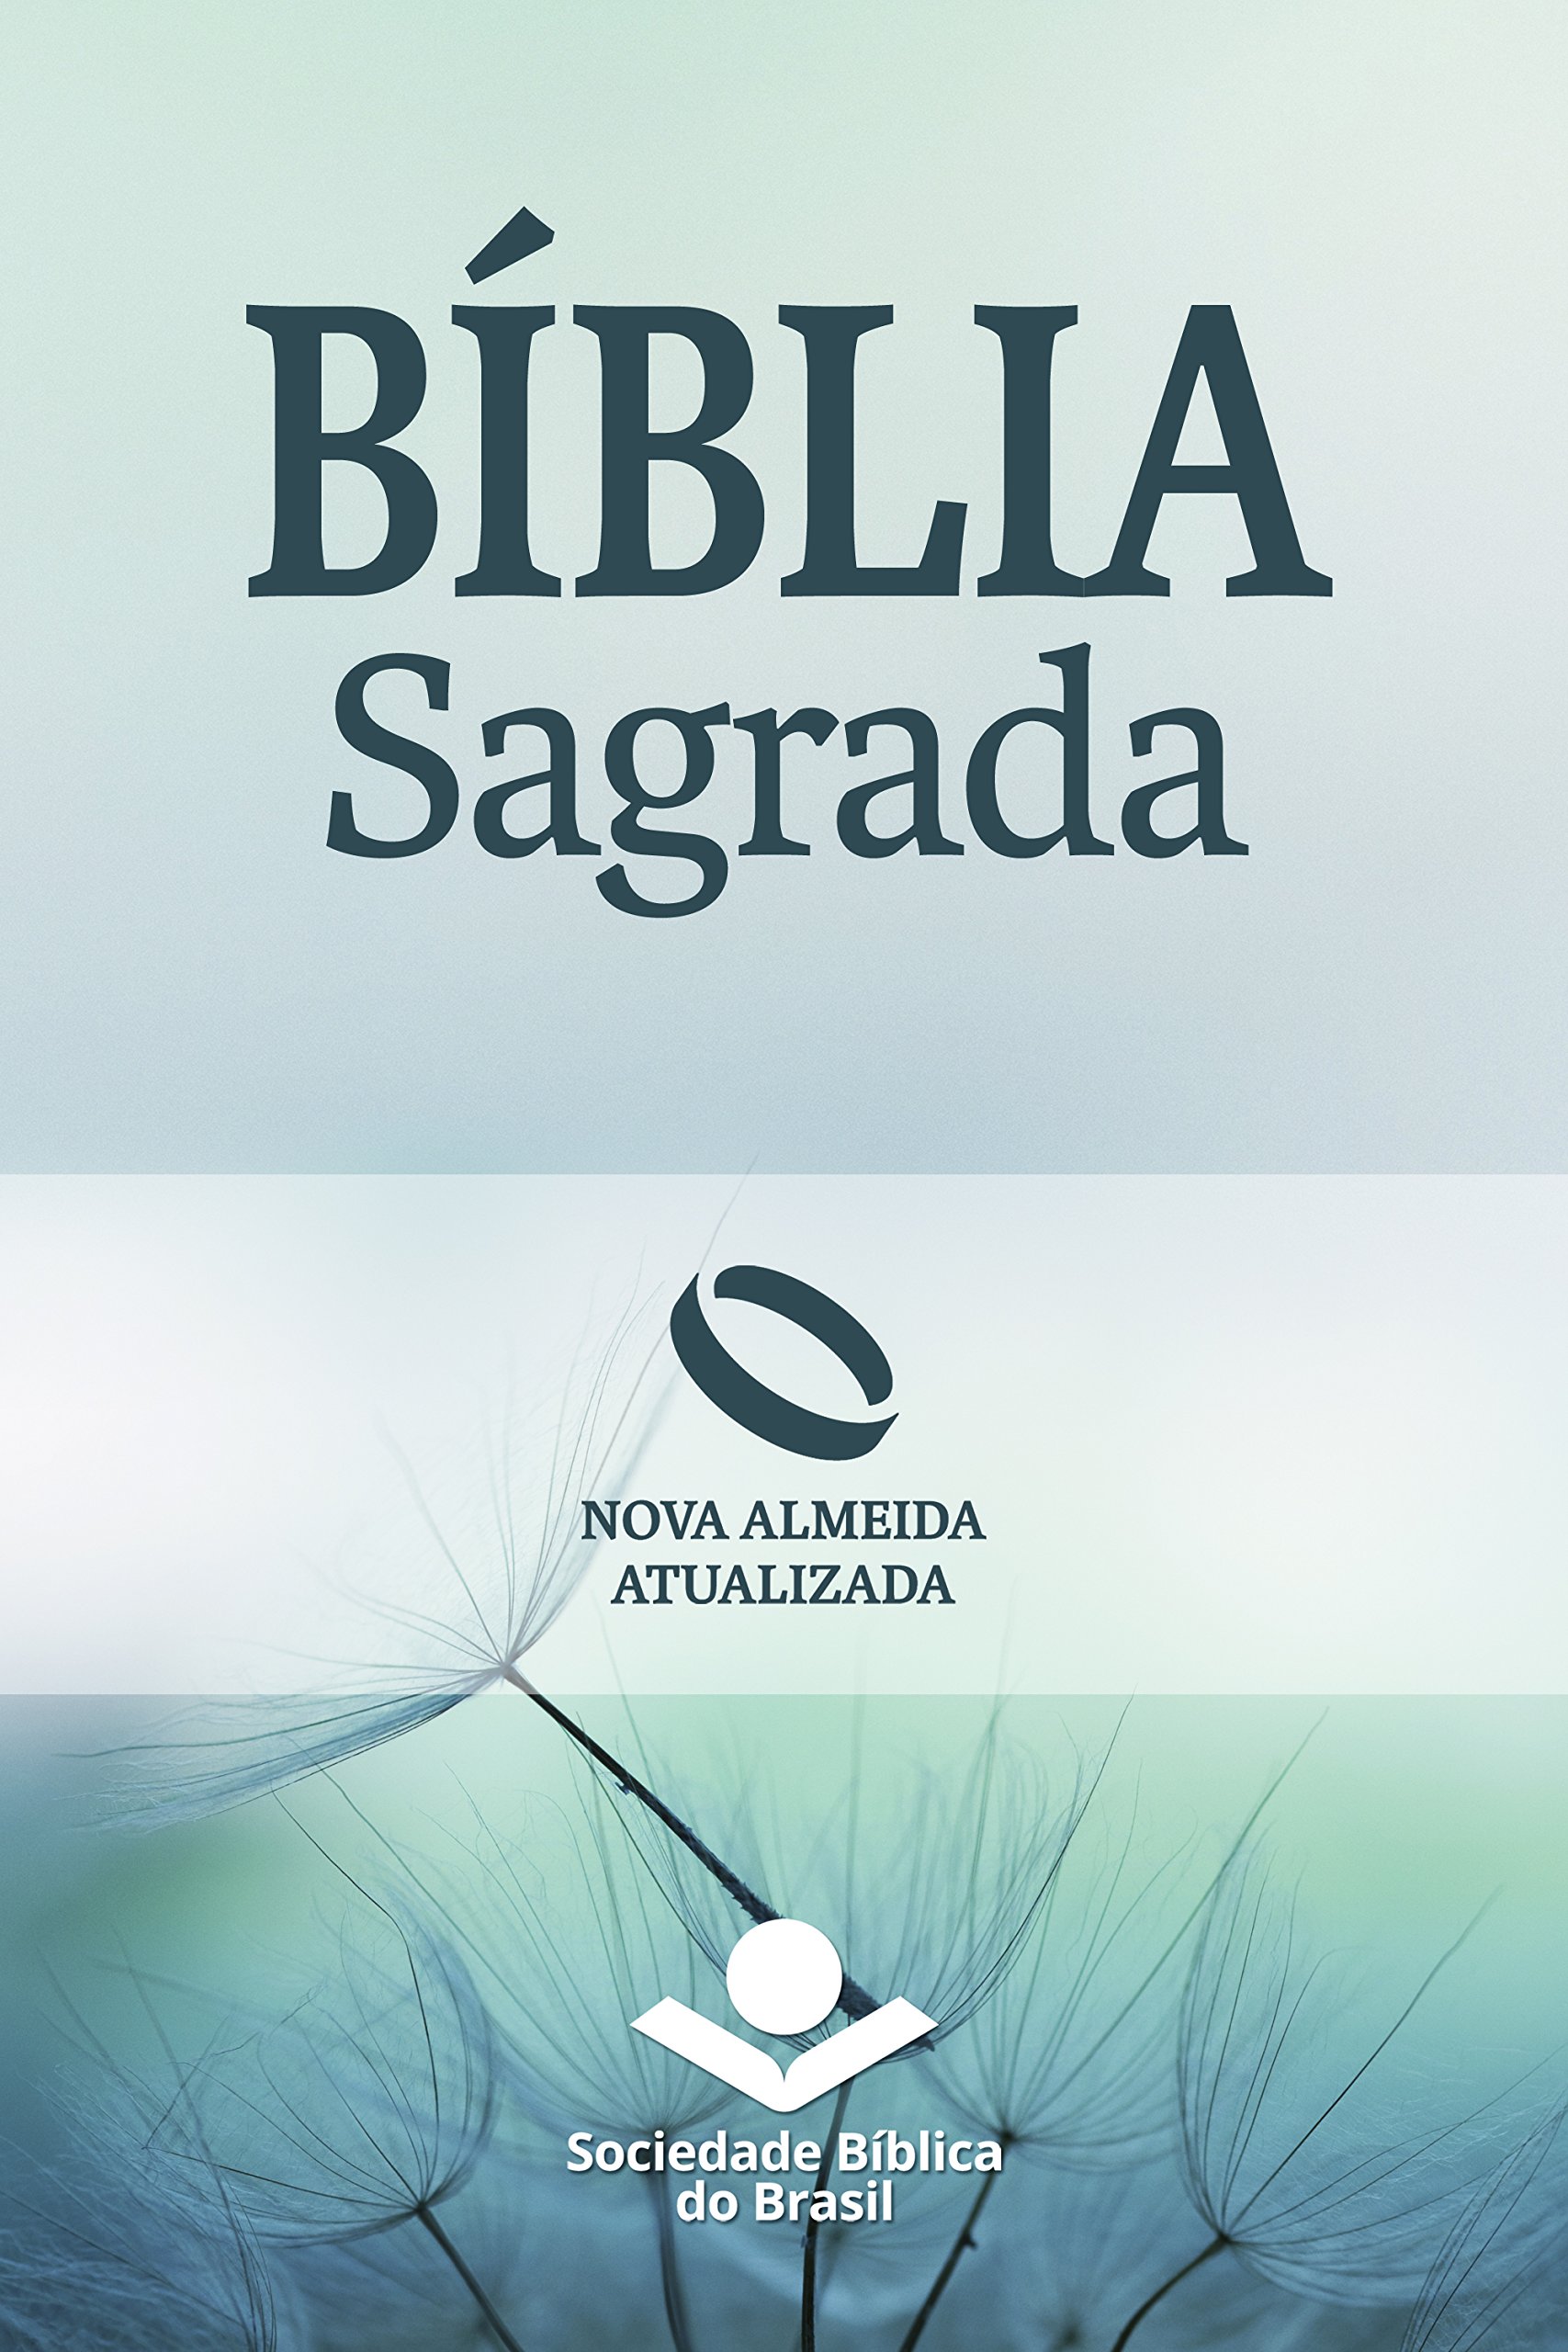 Bíblia Sagrada Nova Almeida Atualizada: Uma tradução clássica com linguagem atual (Portuguese Edition)